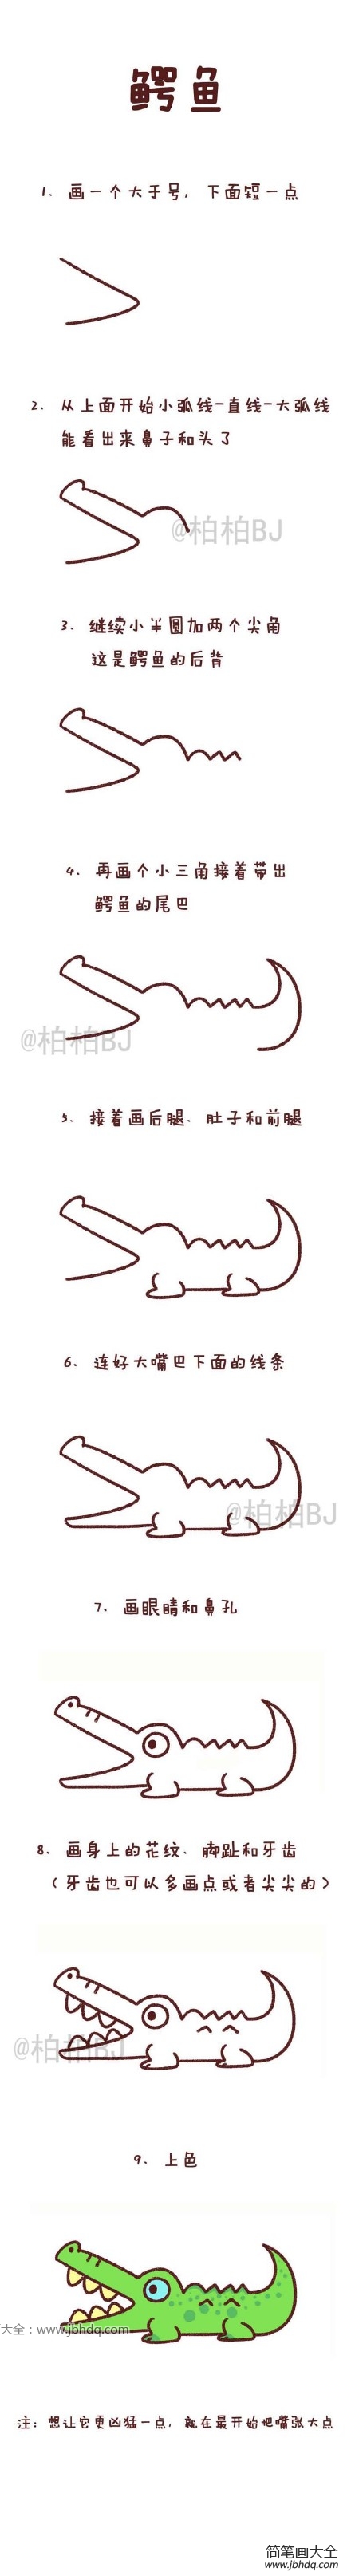 鳄鱼简笔画教程